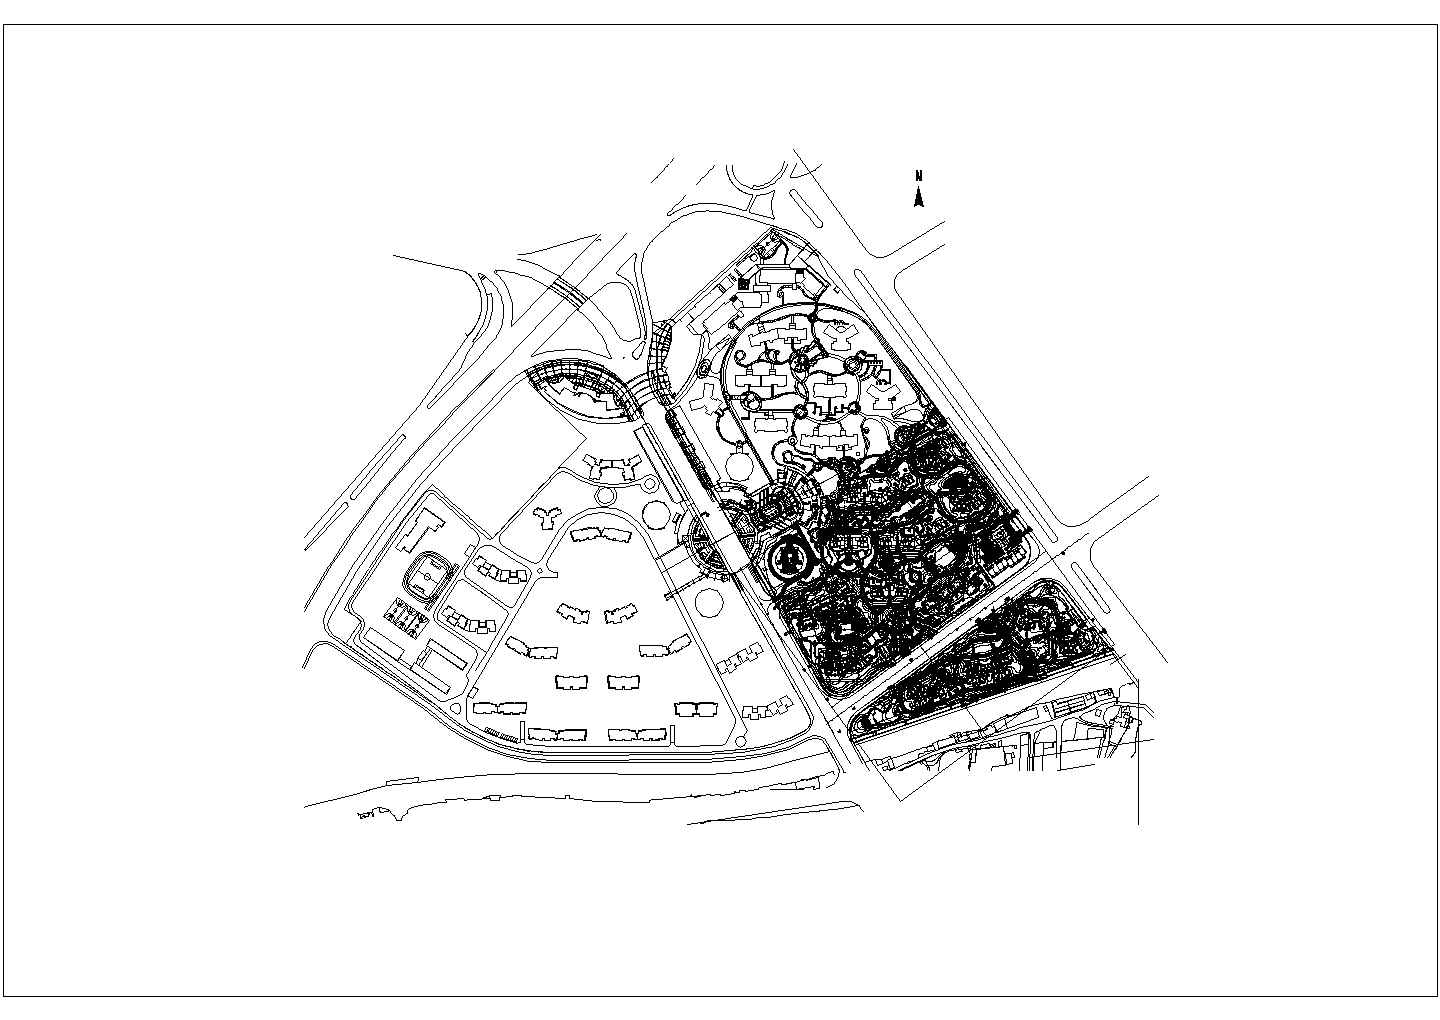 佛山某居住区集中公园景观工程全套施工图